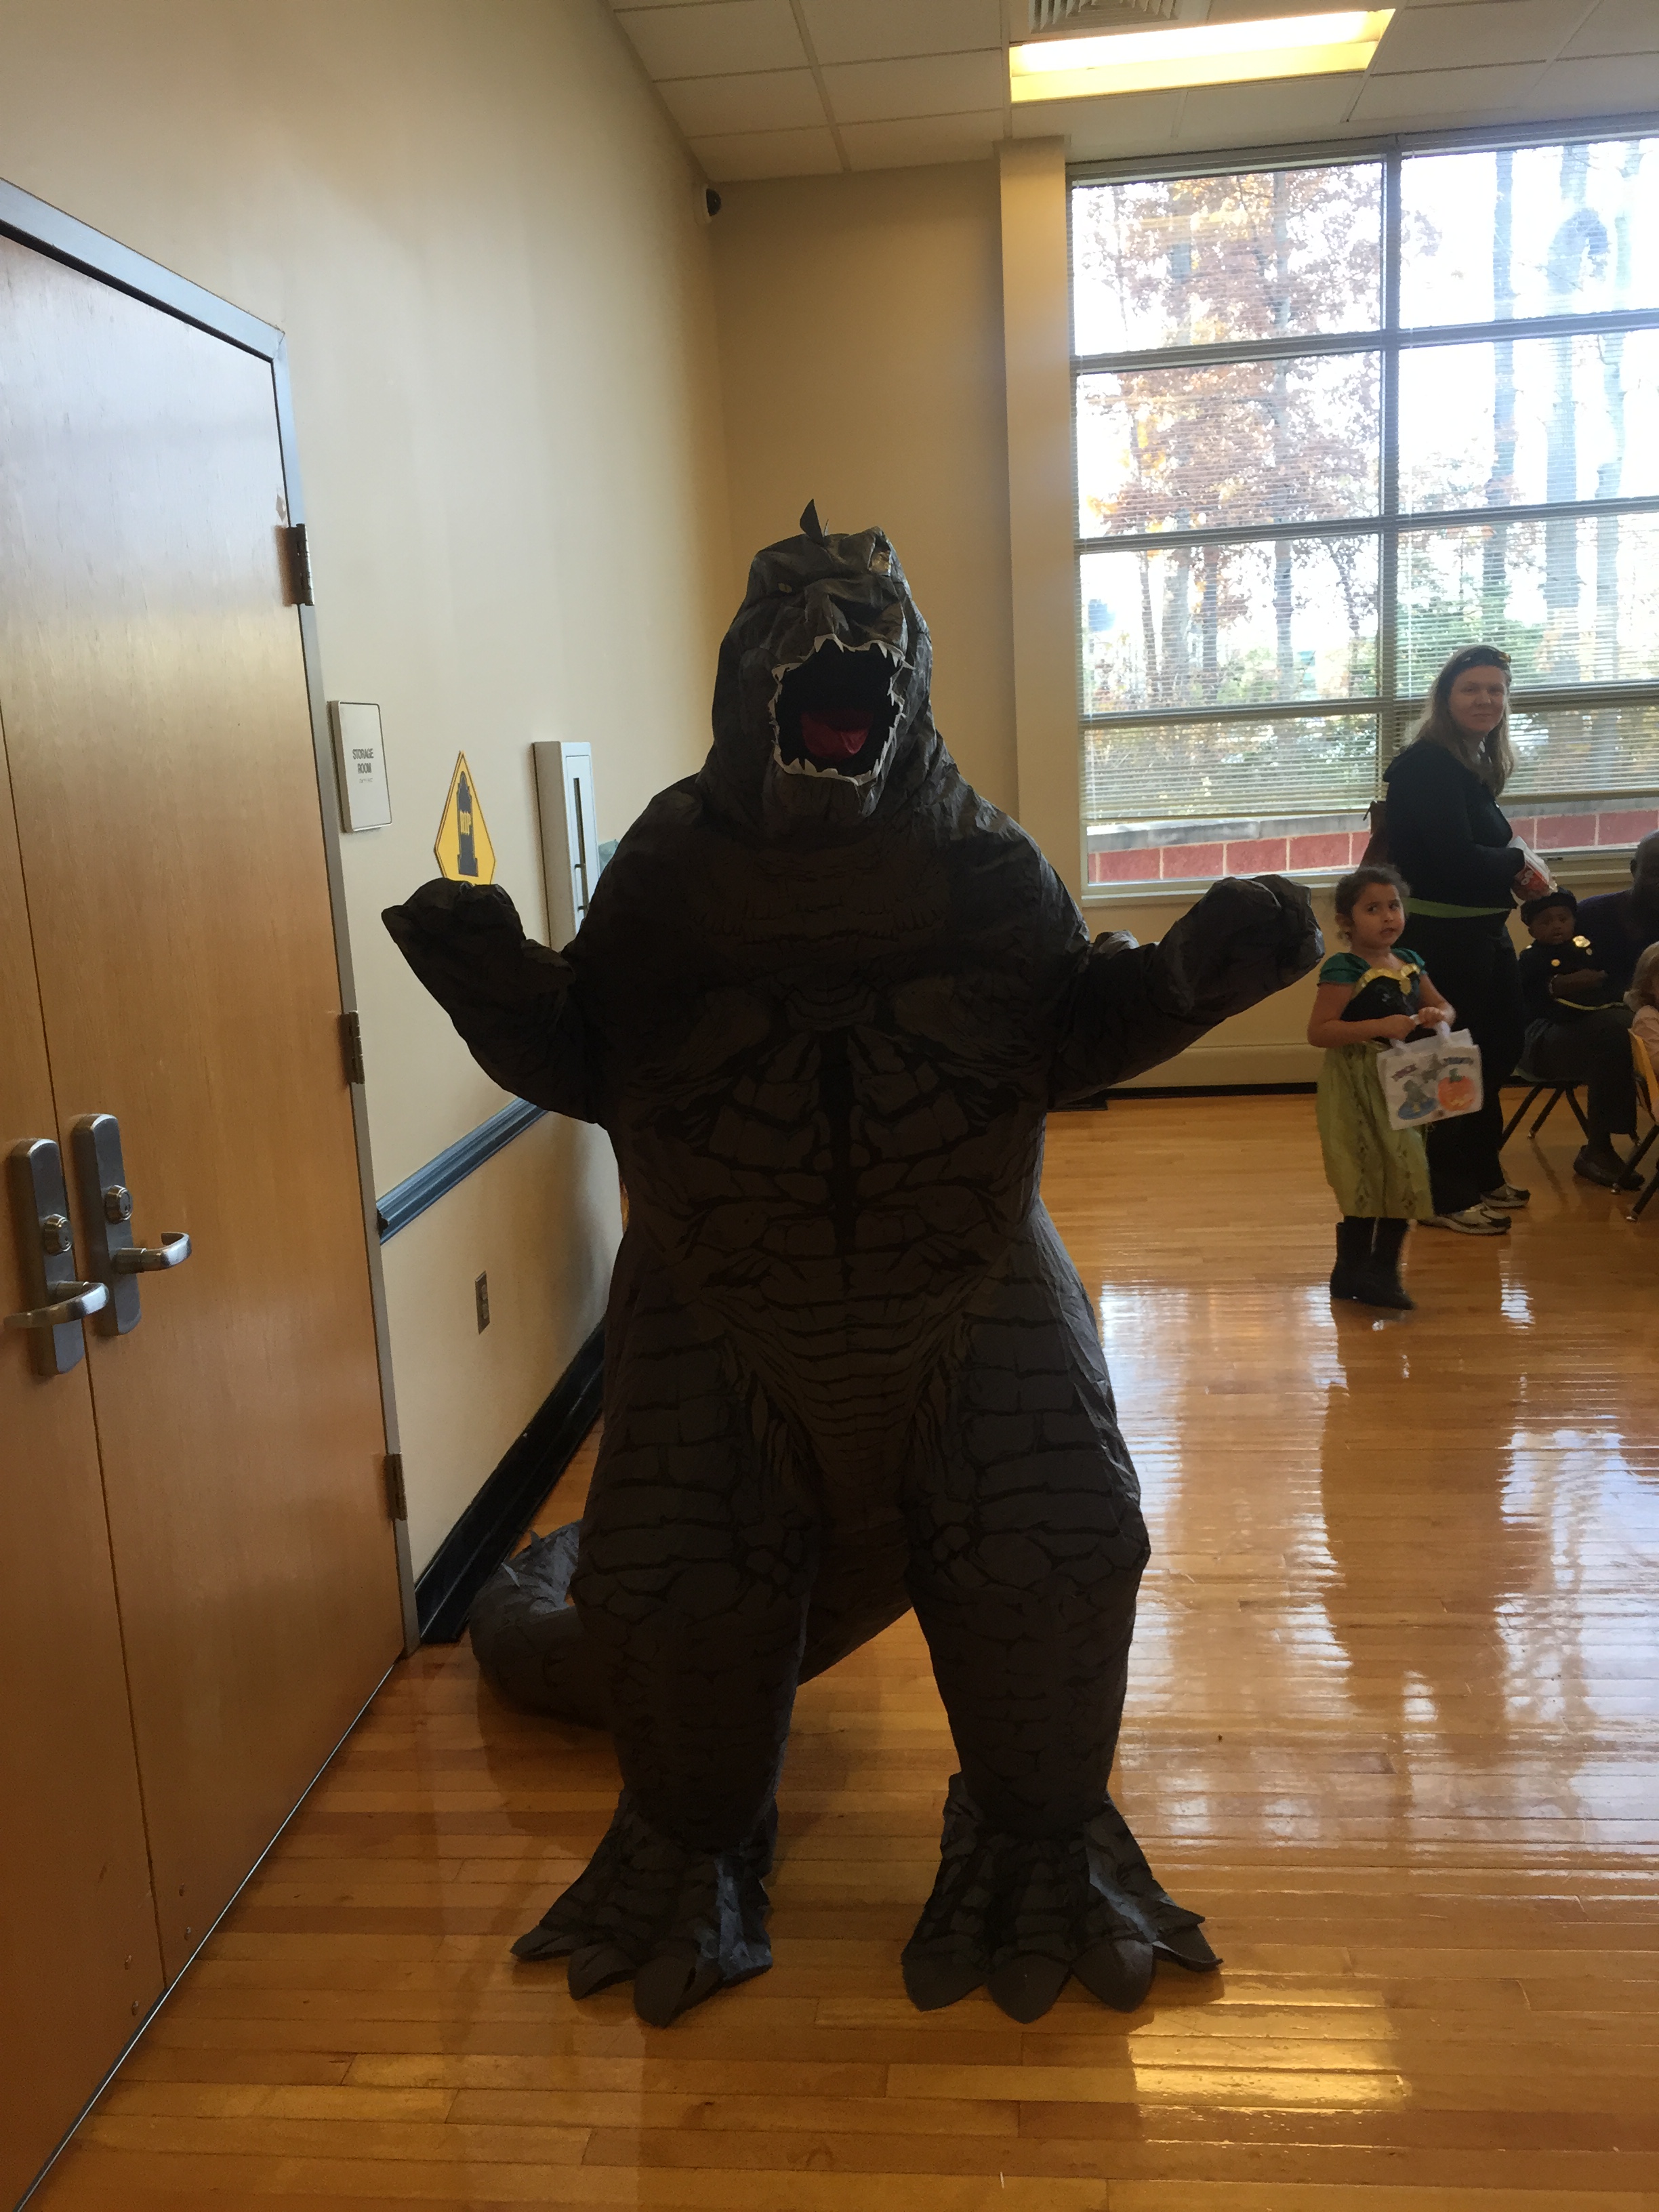 A person in a Godzilla costume